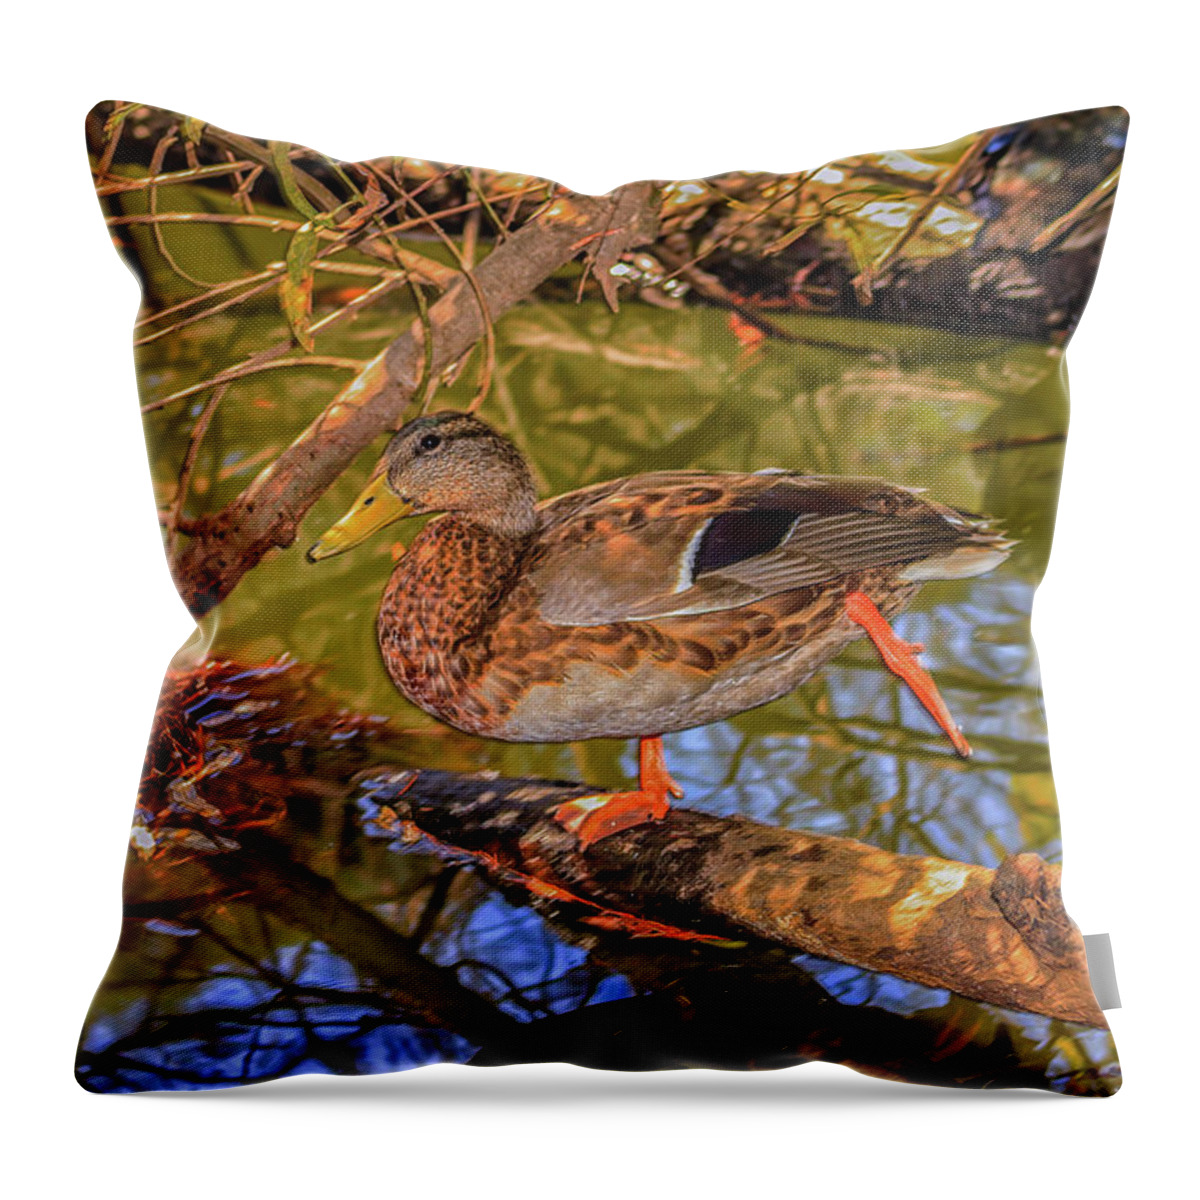  Duck Throw Pillow featuring the photograph Kung Fu Duck by Robert Hebert